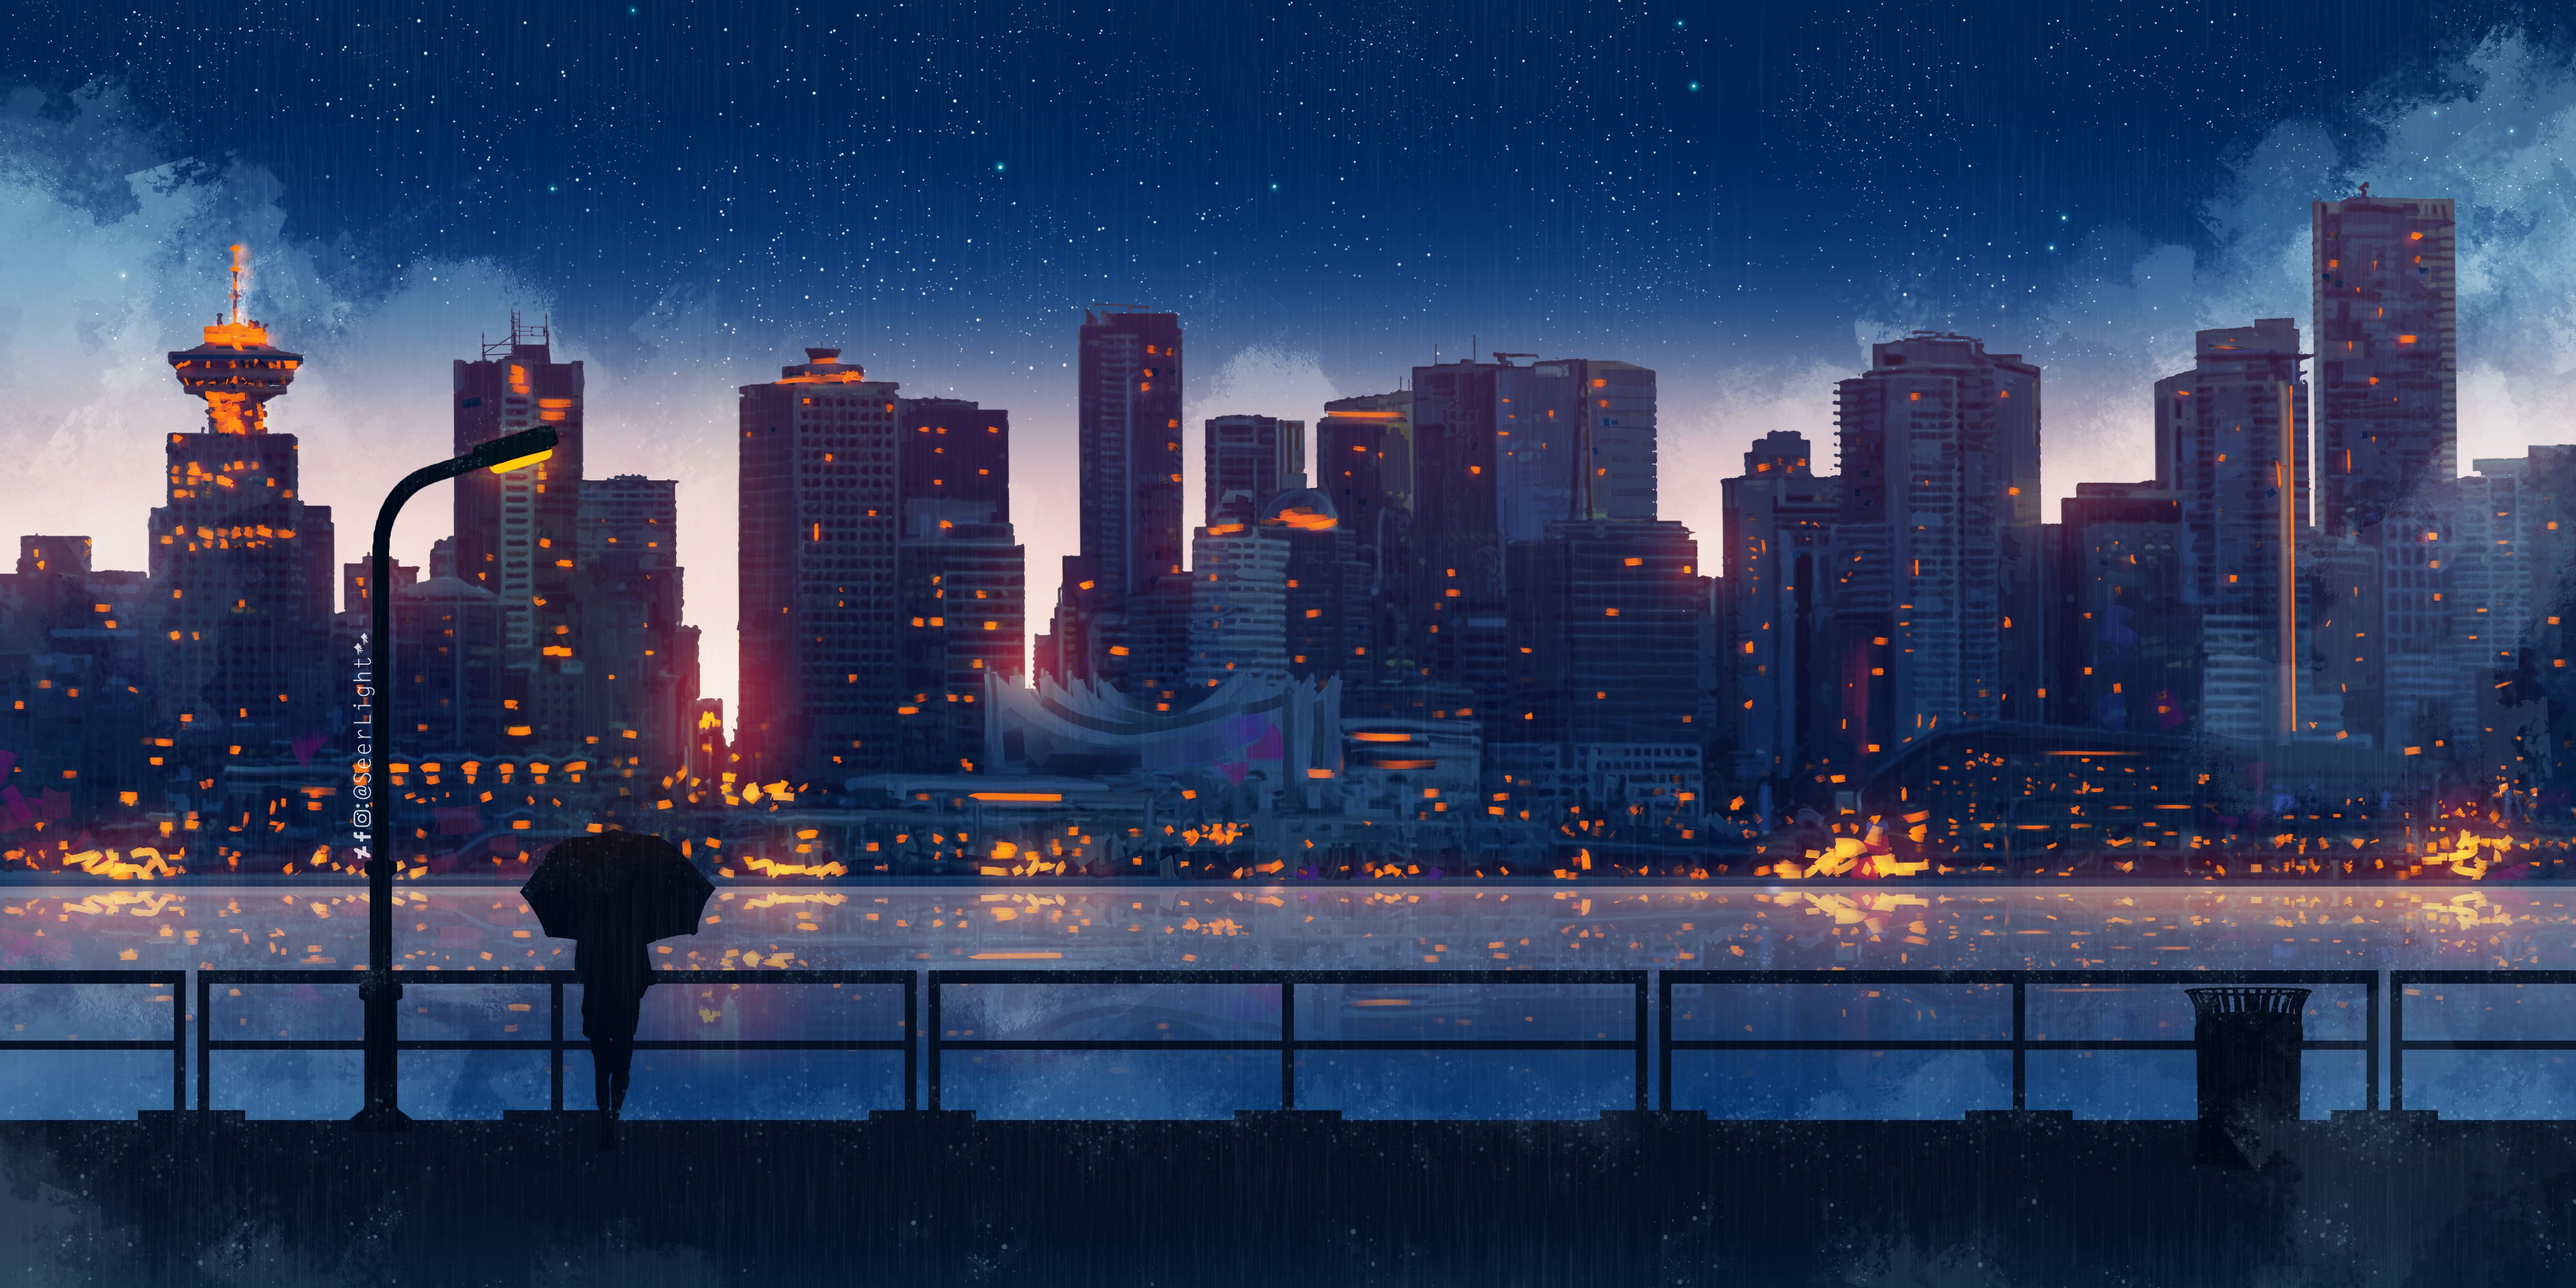 Anime Night City